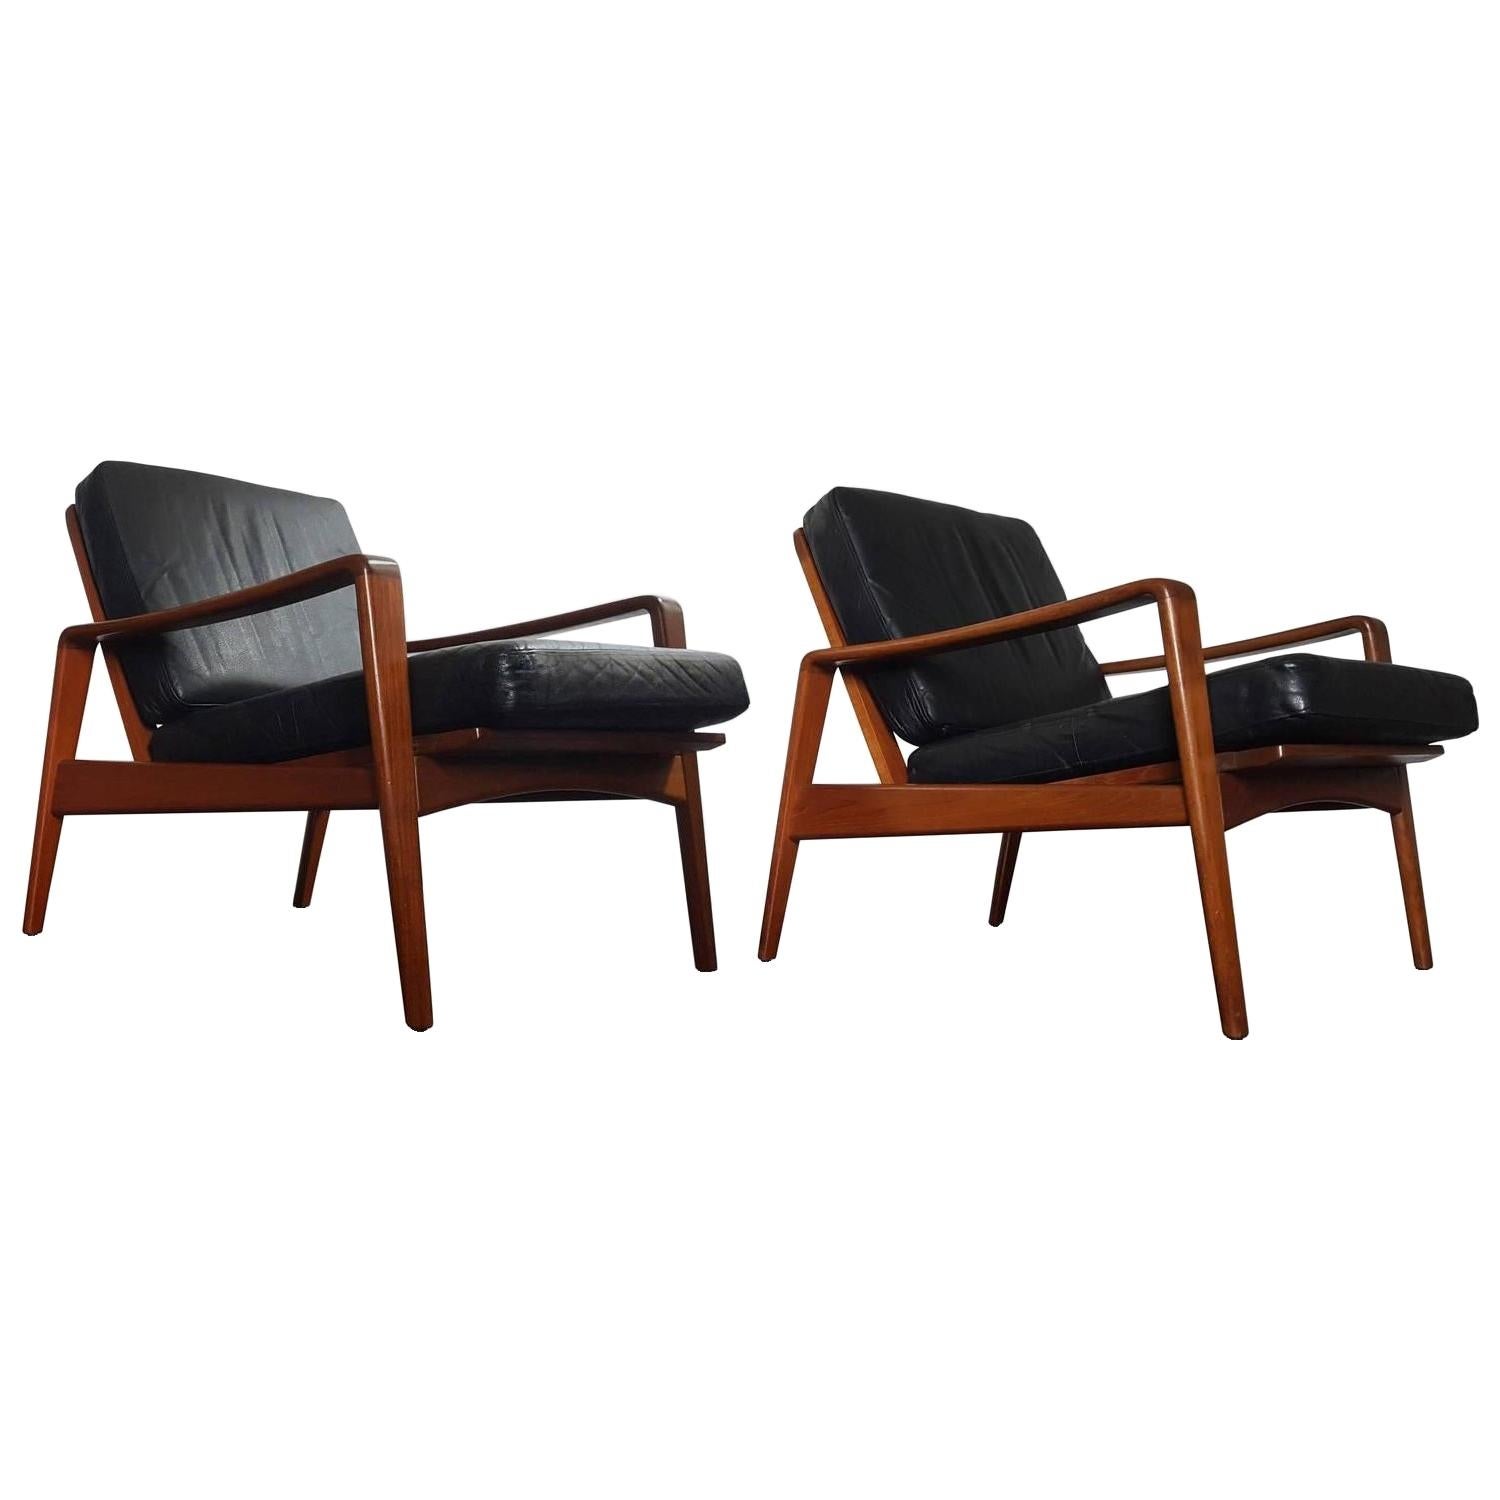 Pair of Danish Modern 1960s Teak Lounge Easy Chairs by Arne Wahl Iversen